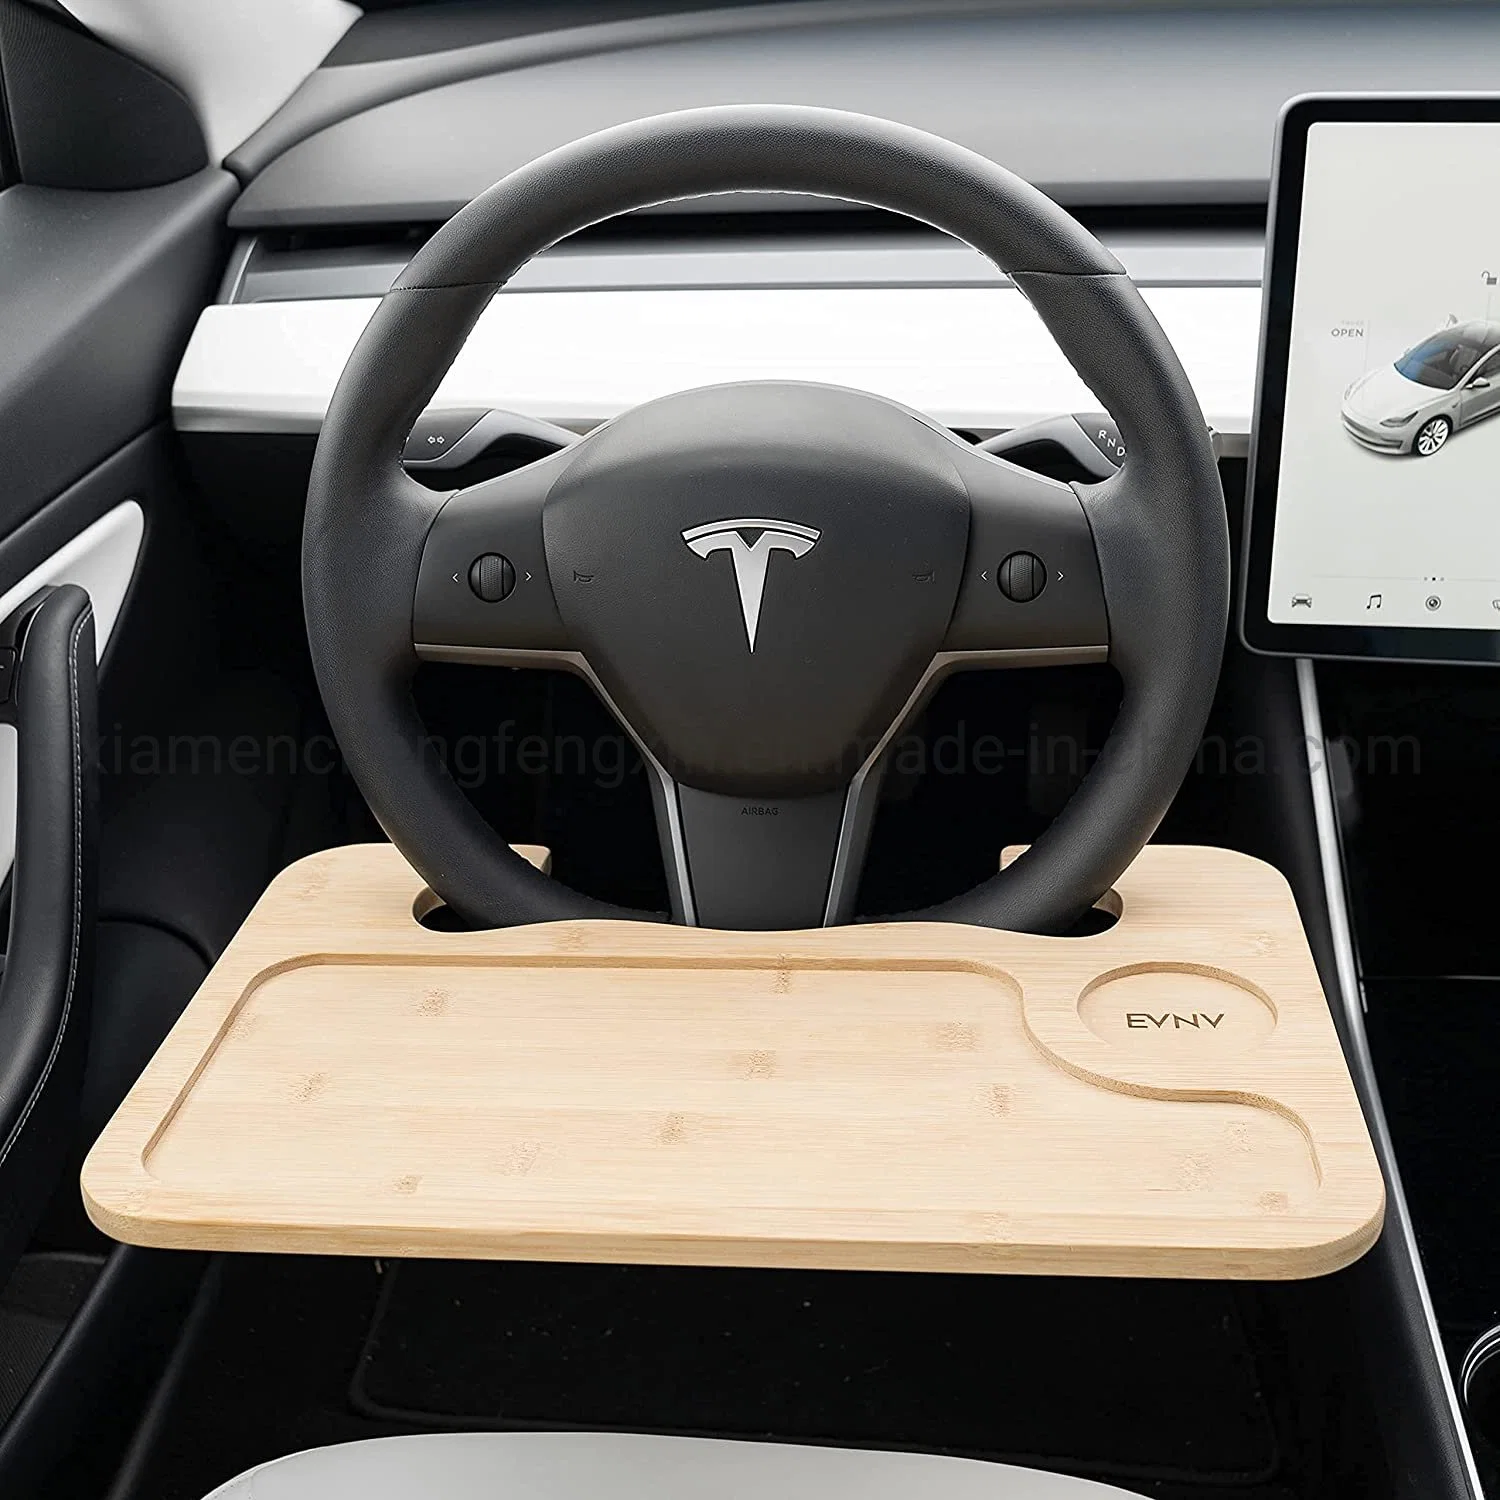 El volante bandeja - Comer cómodamente en tu coche - Coche escritorio portátil para trabajar de forma remota: se adapta a la mayoría de los automóviles, incluyendo el modelo de Tesla